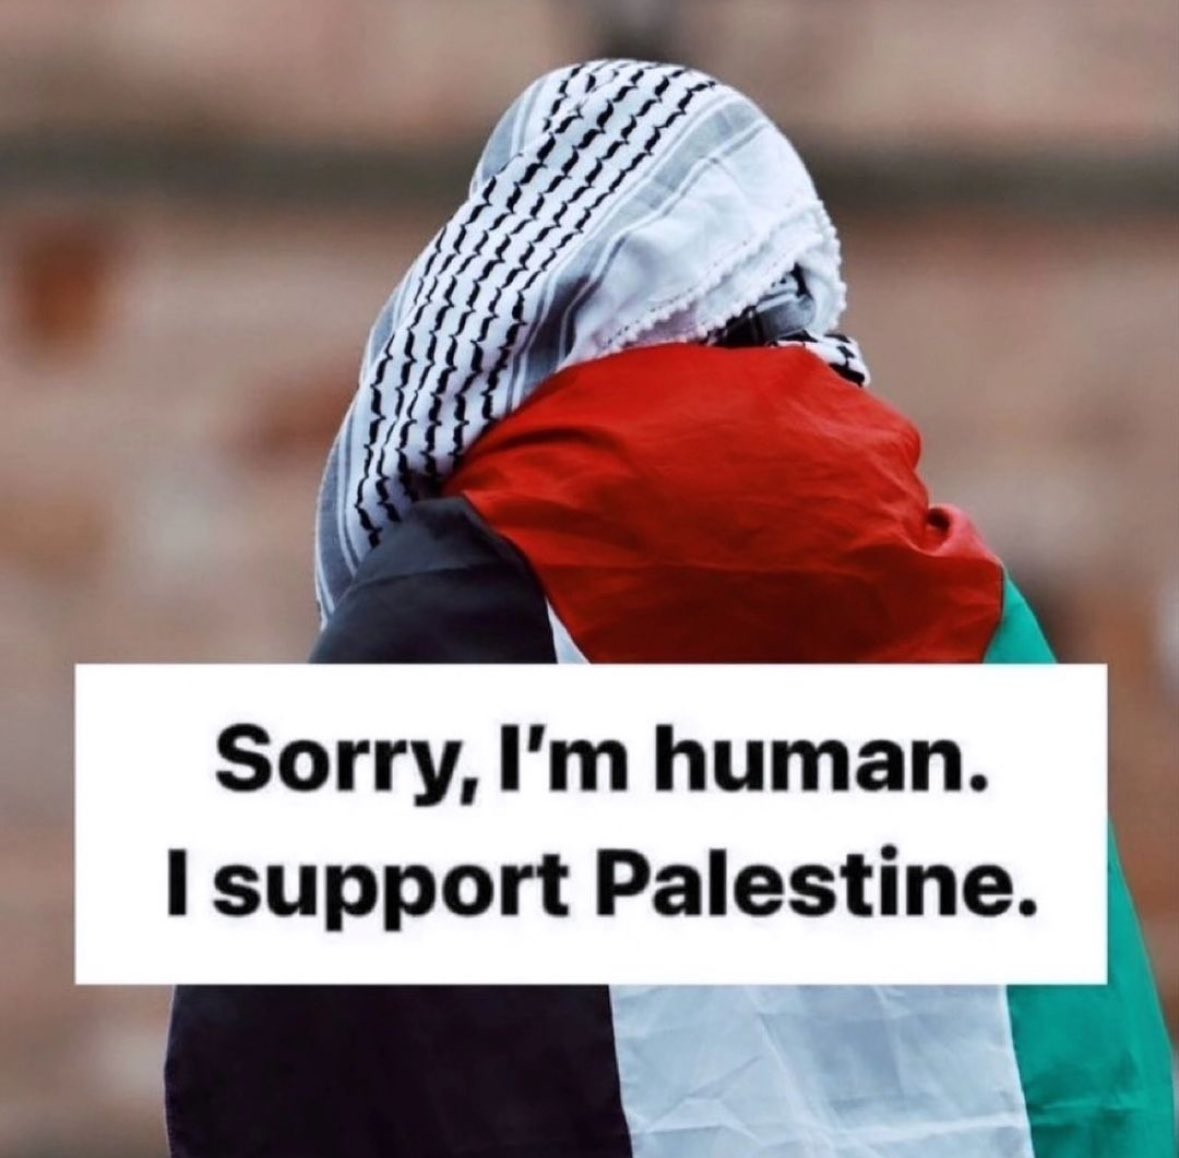 Con la campaña de @publico_es de #BoicotEurovision por permitir la participación de Israel frente al #GenocidioEnGaza ✊🏽🇵🇸 Espero una reacción solidaria y fraterna con el pueblo palestino. Por humanidad y por compromiso a los Derechos Humanos.